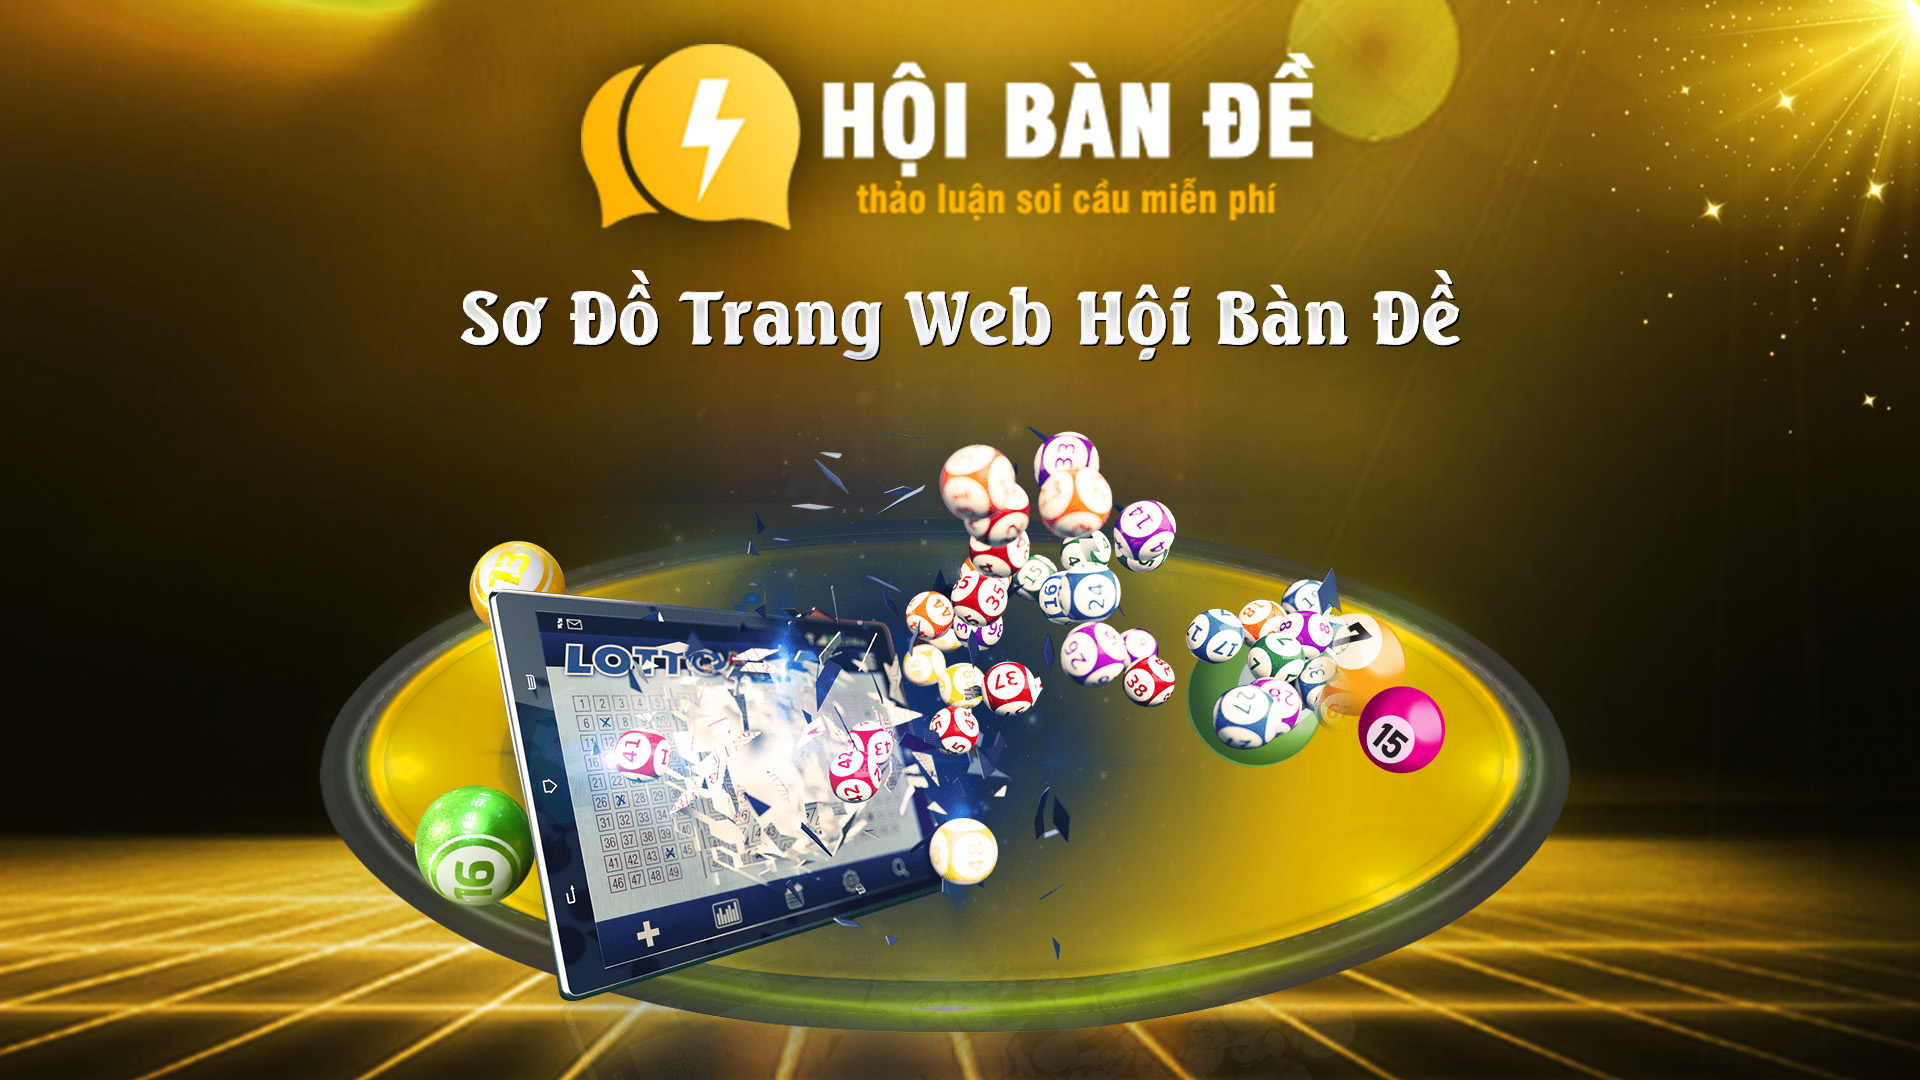 So Do Trang Web Hoi Ban De